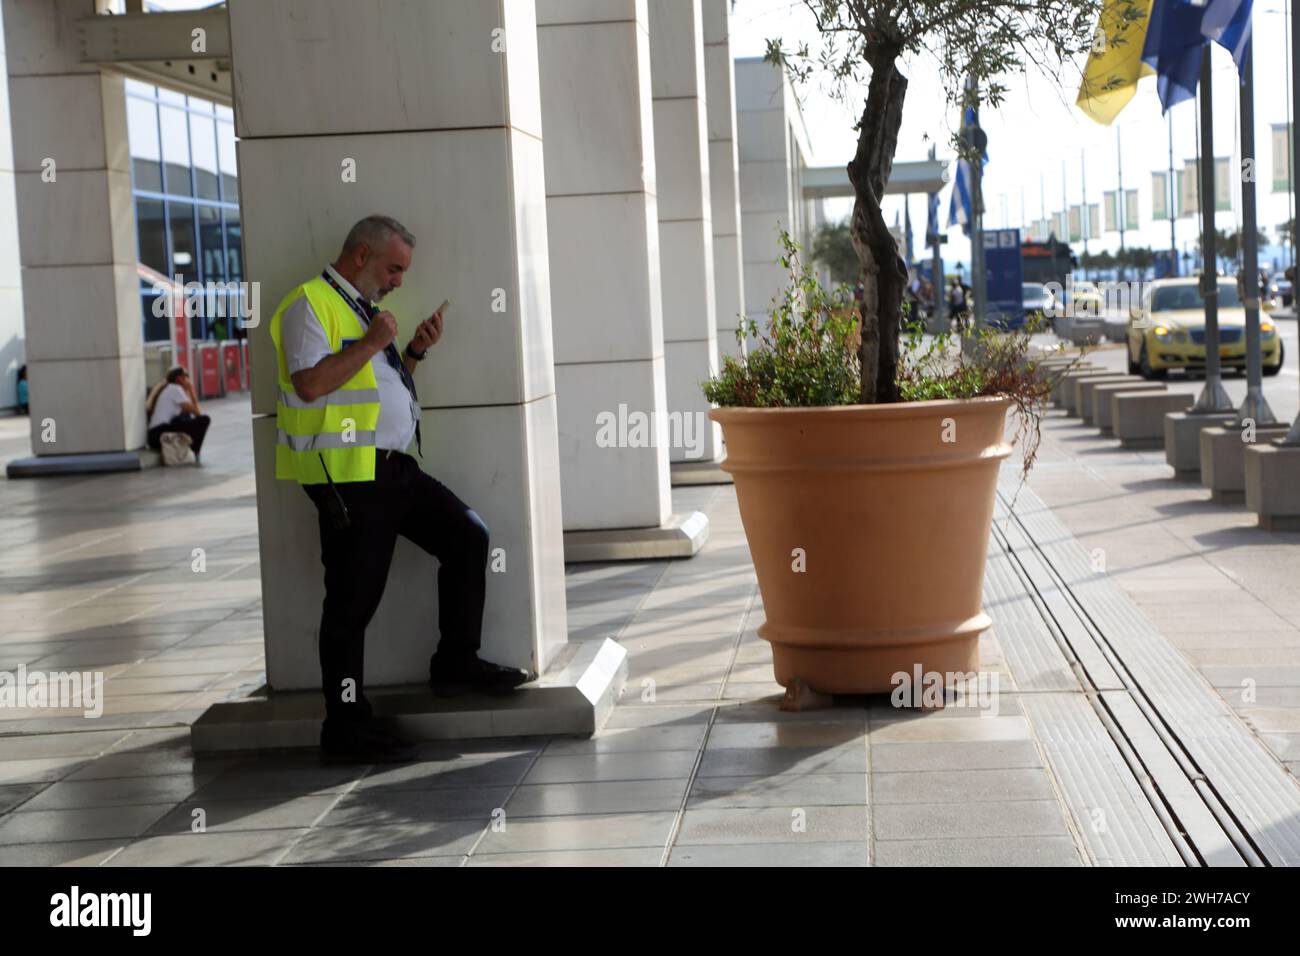 Athènes Grèce aéroport international d'Athènes (AIA) Eleftherios Venizelos Homme portant un gilet haute visibilité debout Olive Tree en pot à l'extérieur Banque D'Images